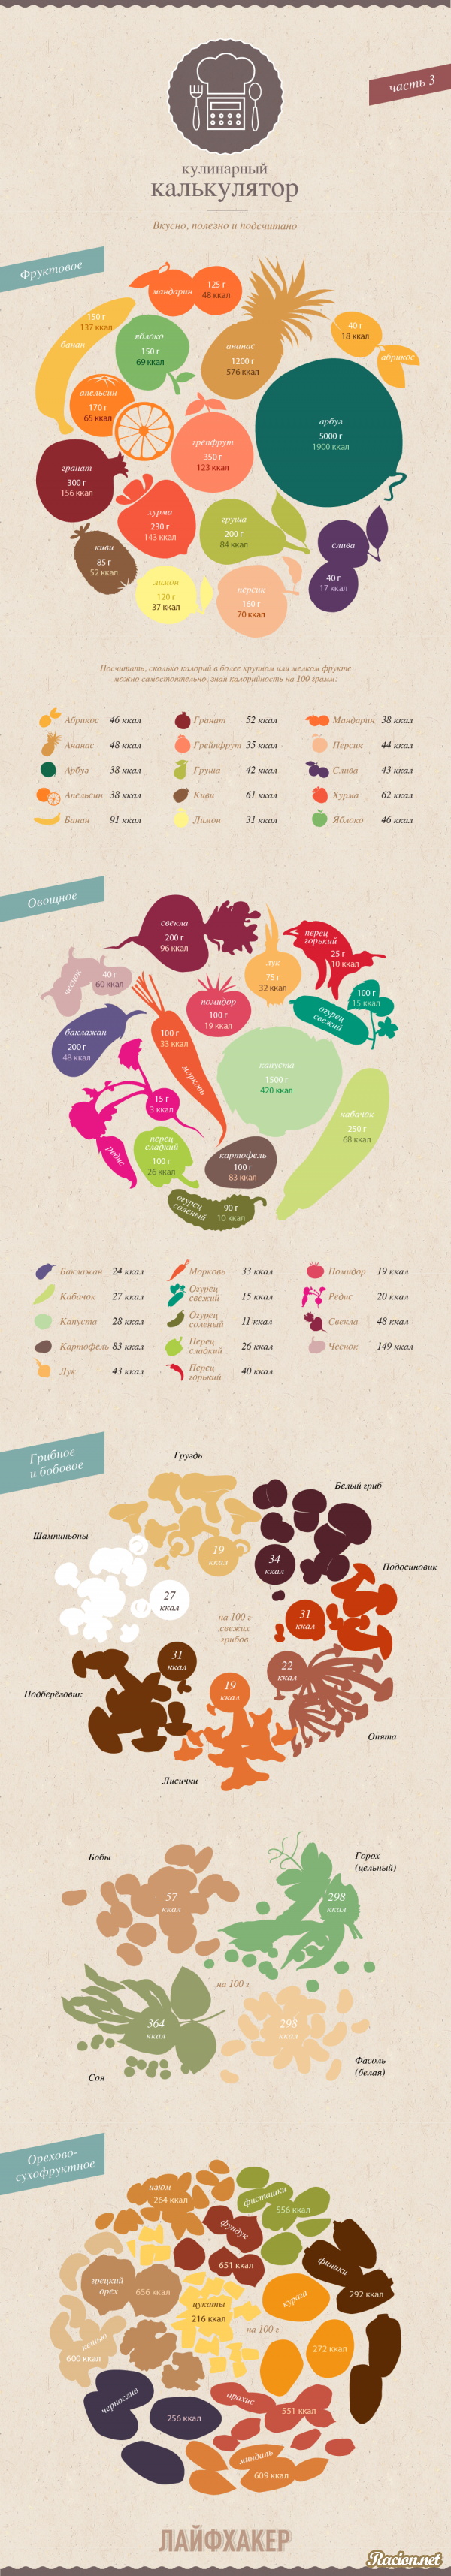 Кулинарные инфографики